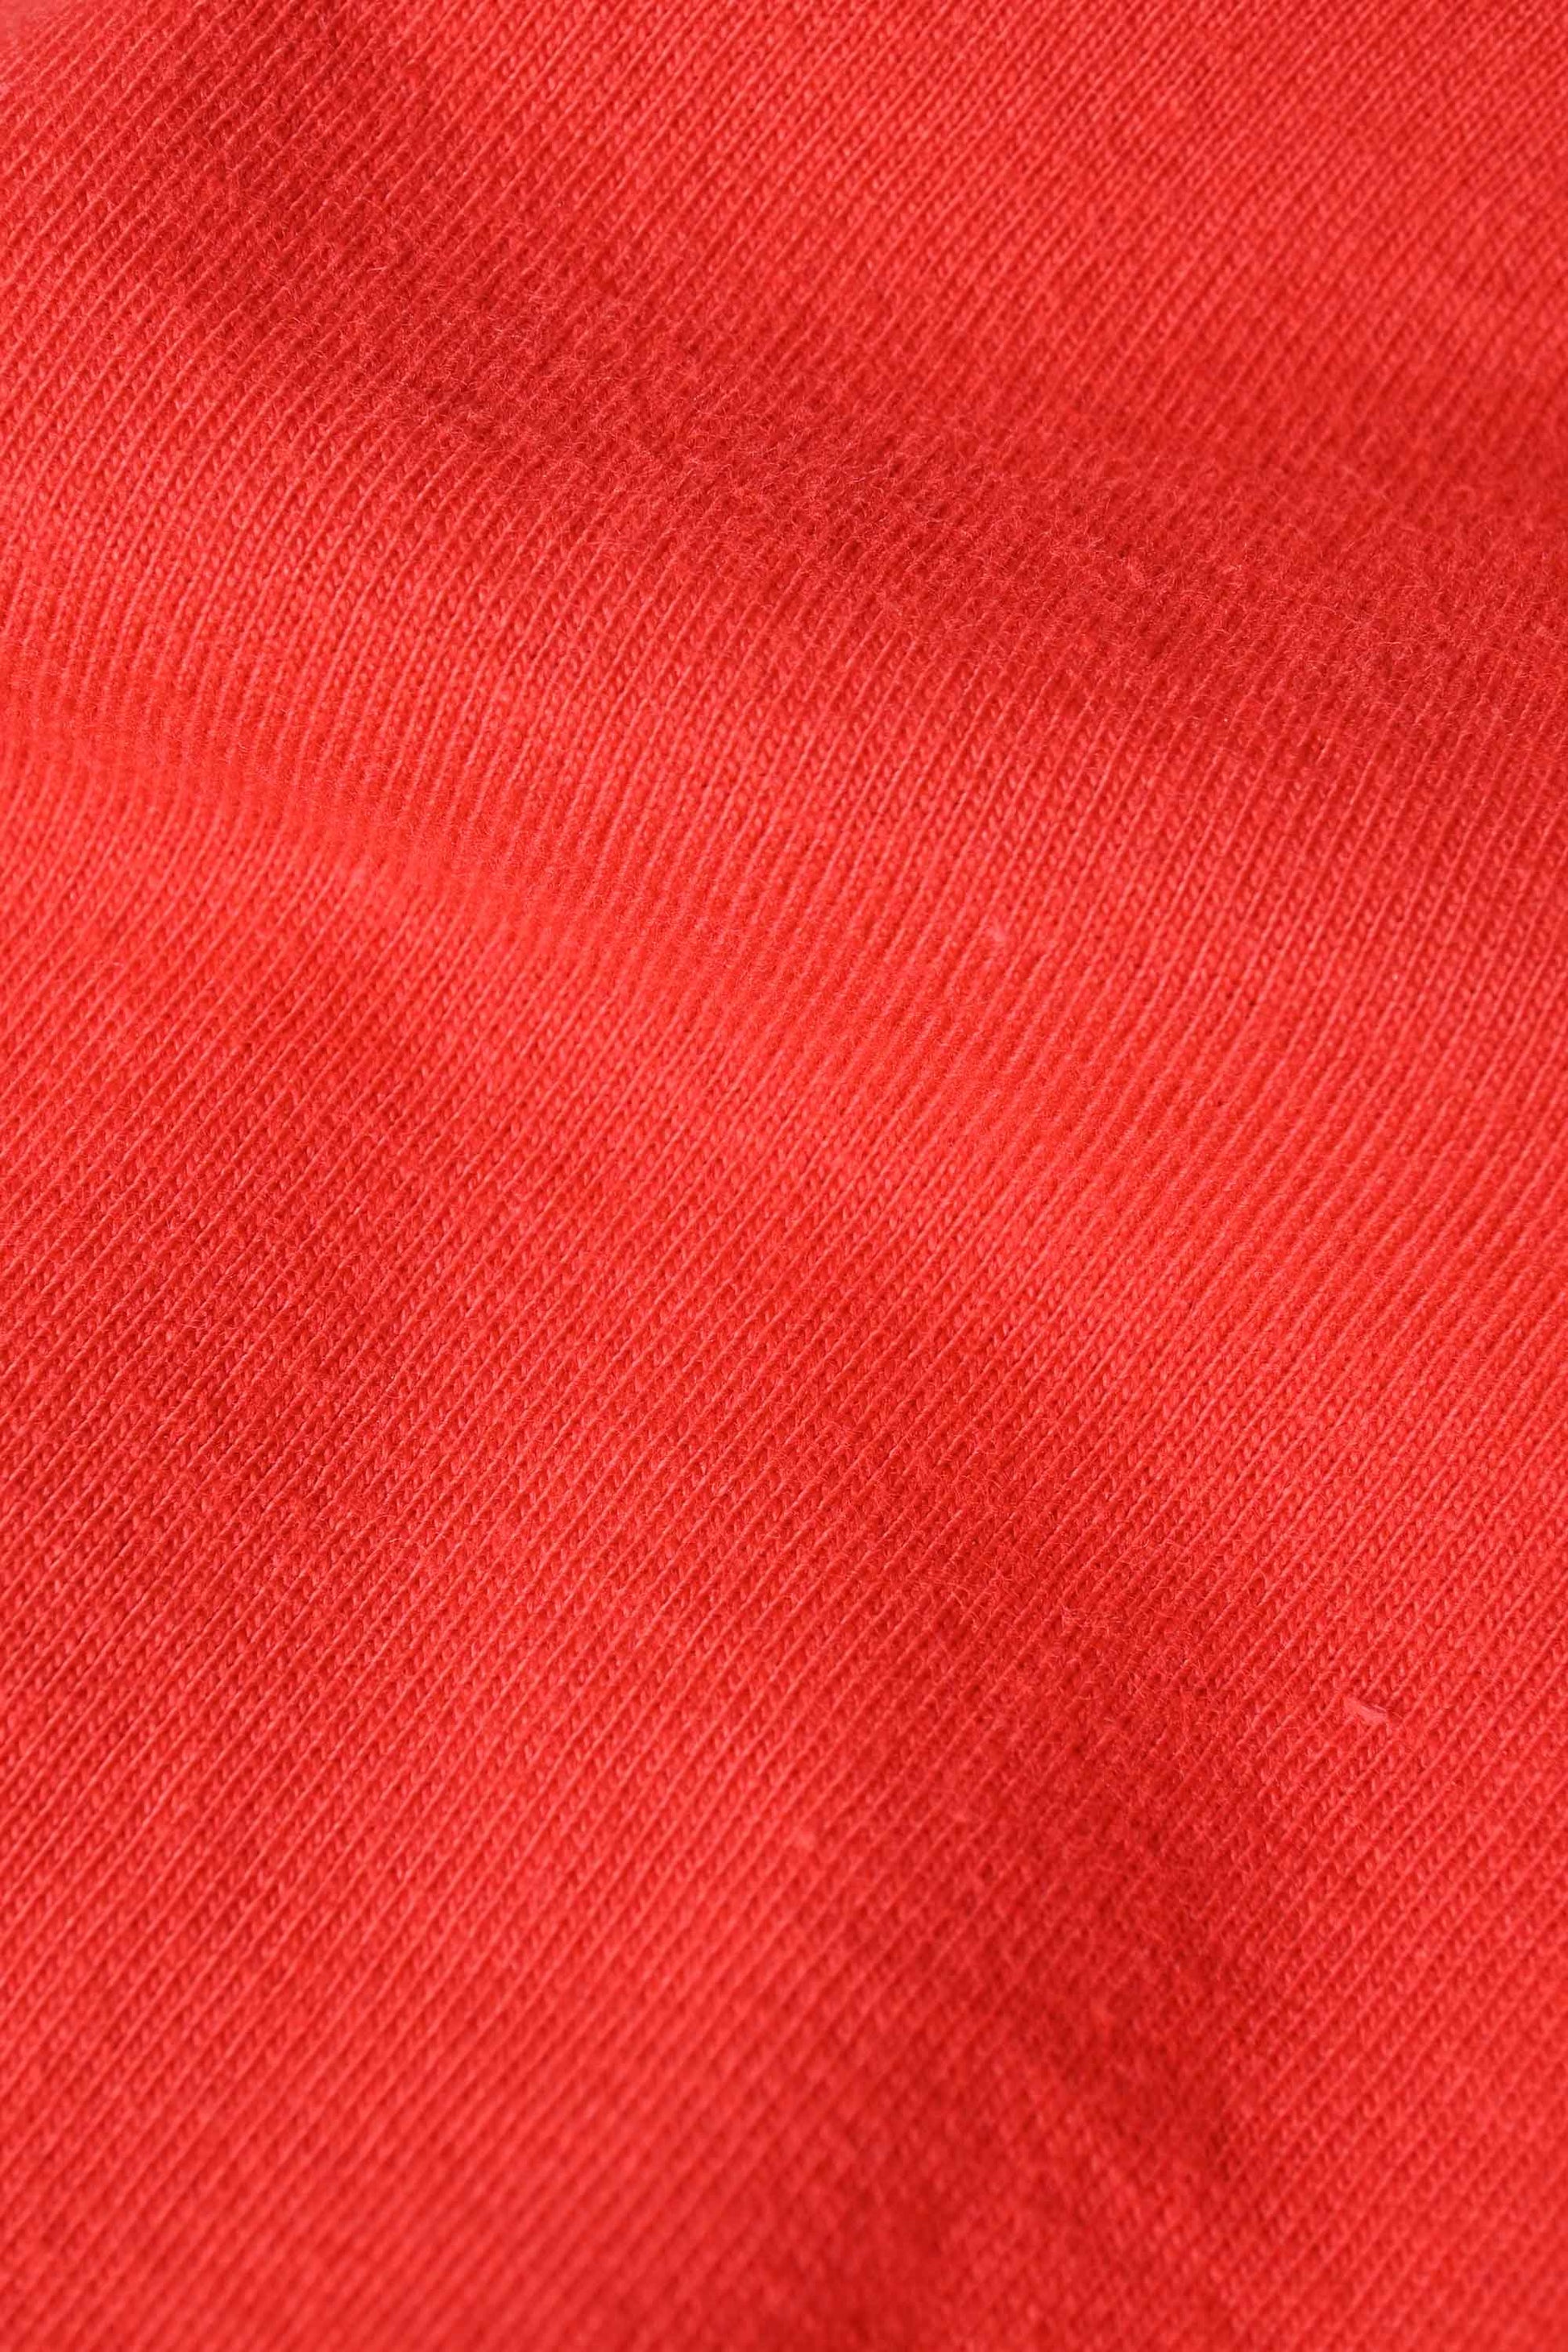 Polo Republica Men's Sun Set Printed Crew Neck Tee Shirt Men's Tee Shirt Polo Republica 